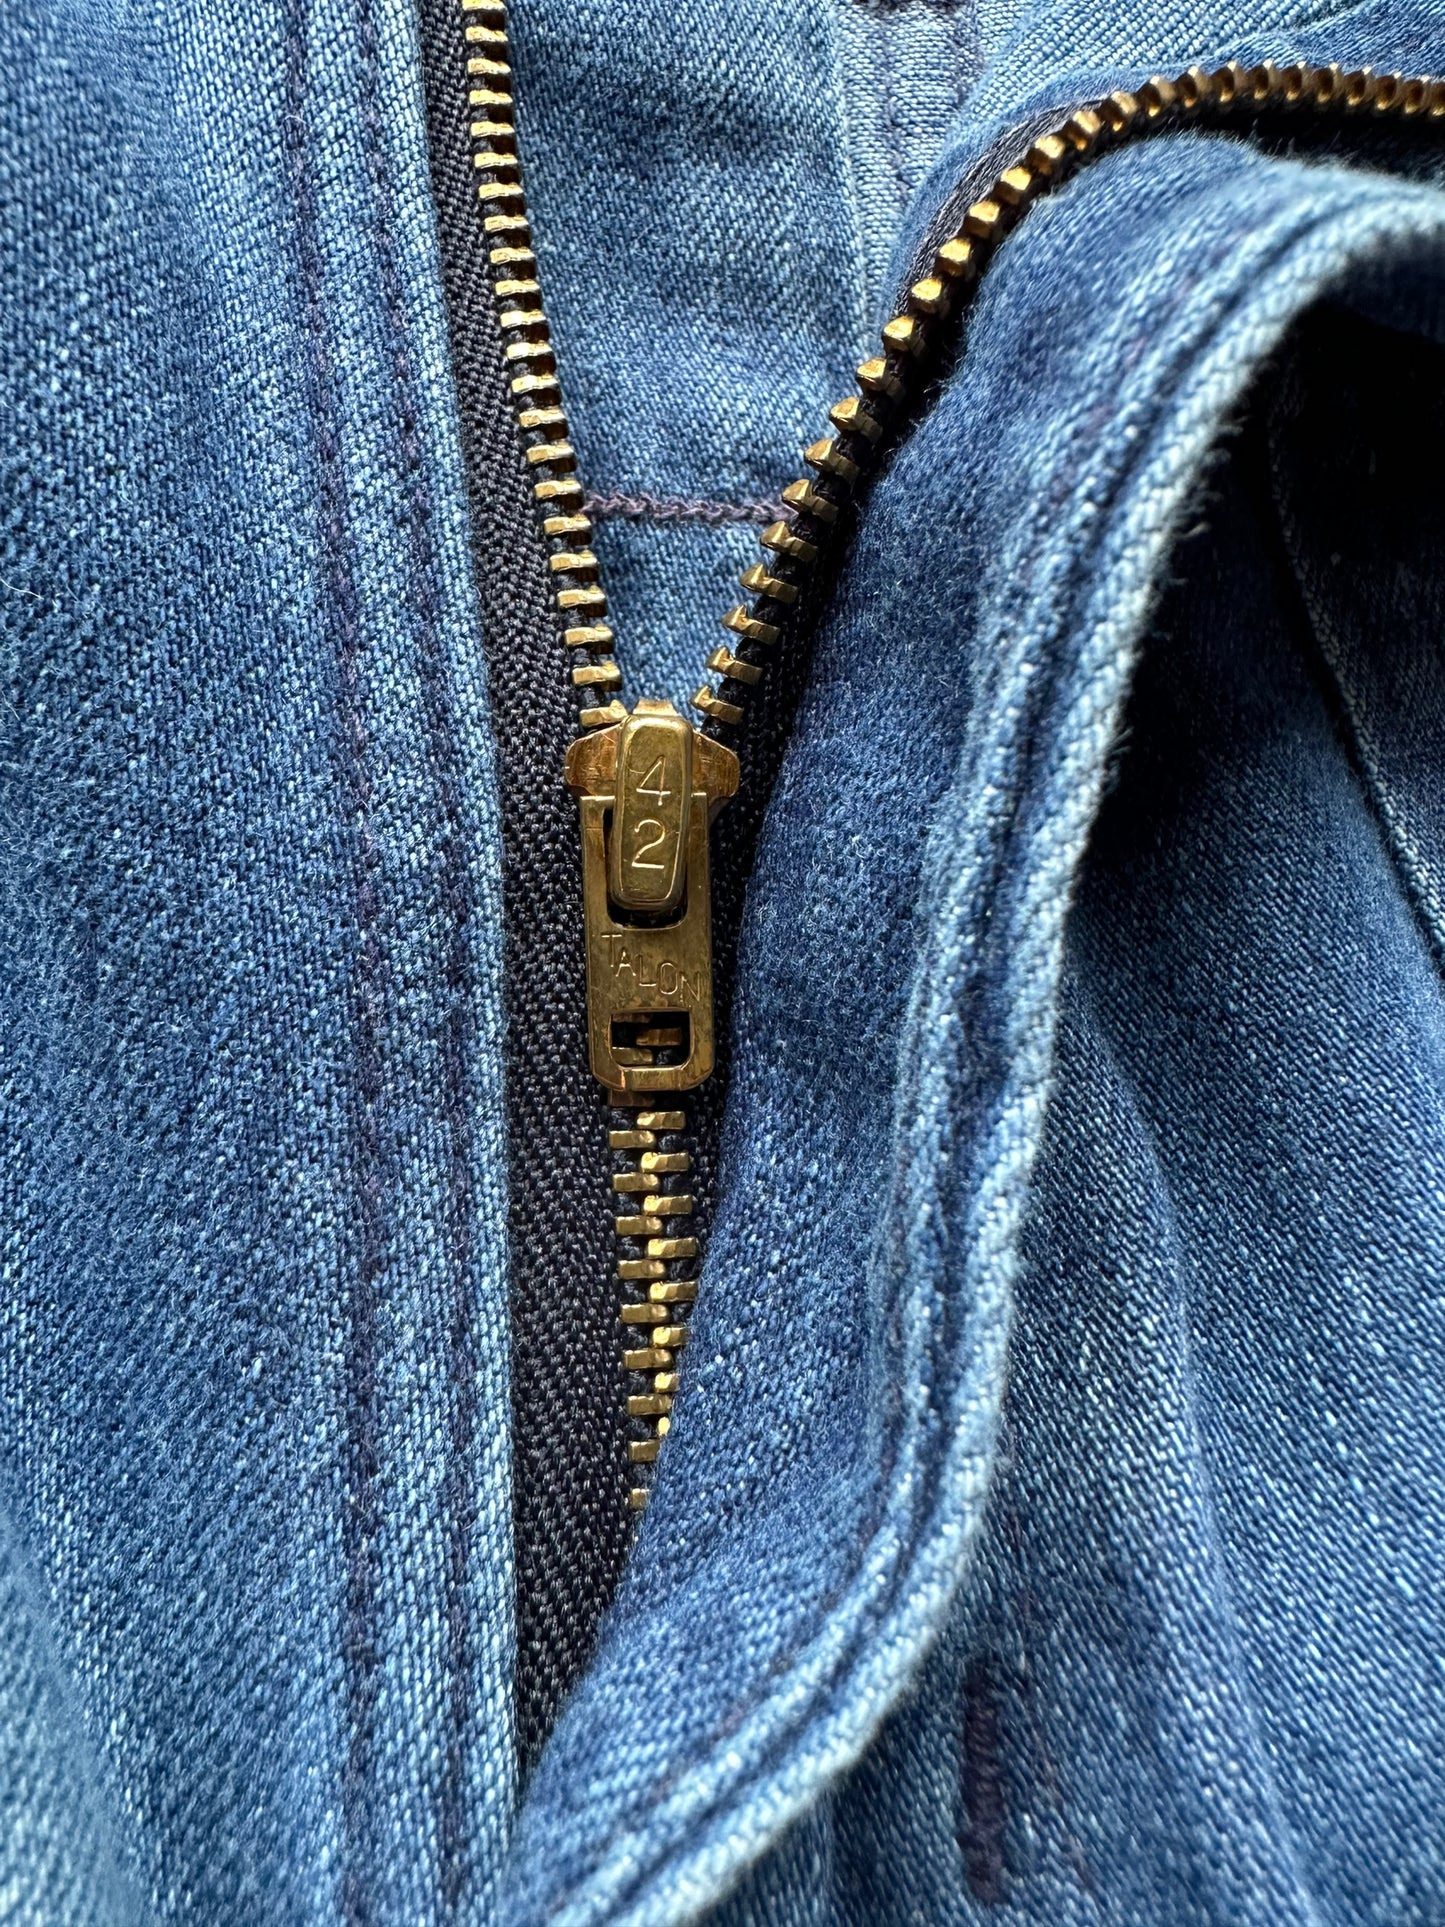 Talon zipper on Vintage Seafarer Swabbies 31 x 33 | Barn Owl Vintage Seattle | Vintage Denim Seattle